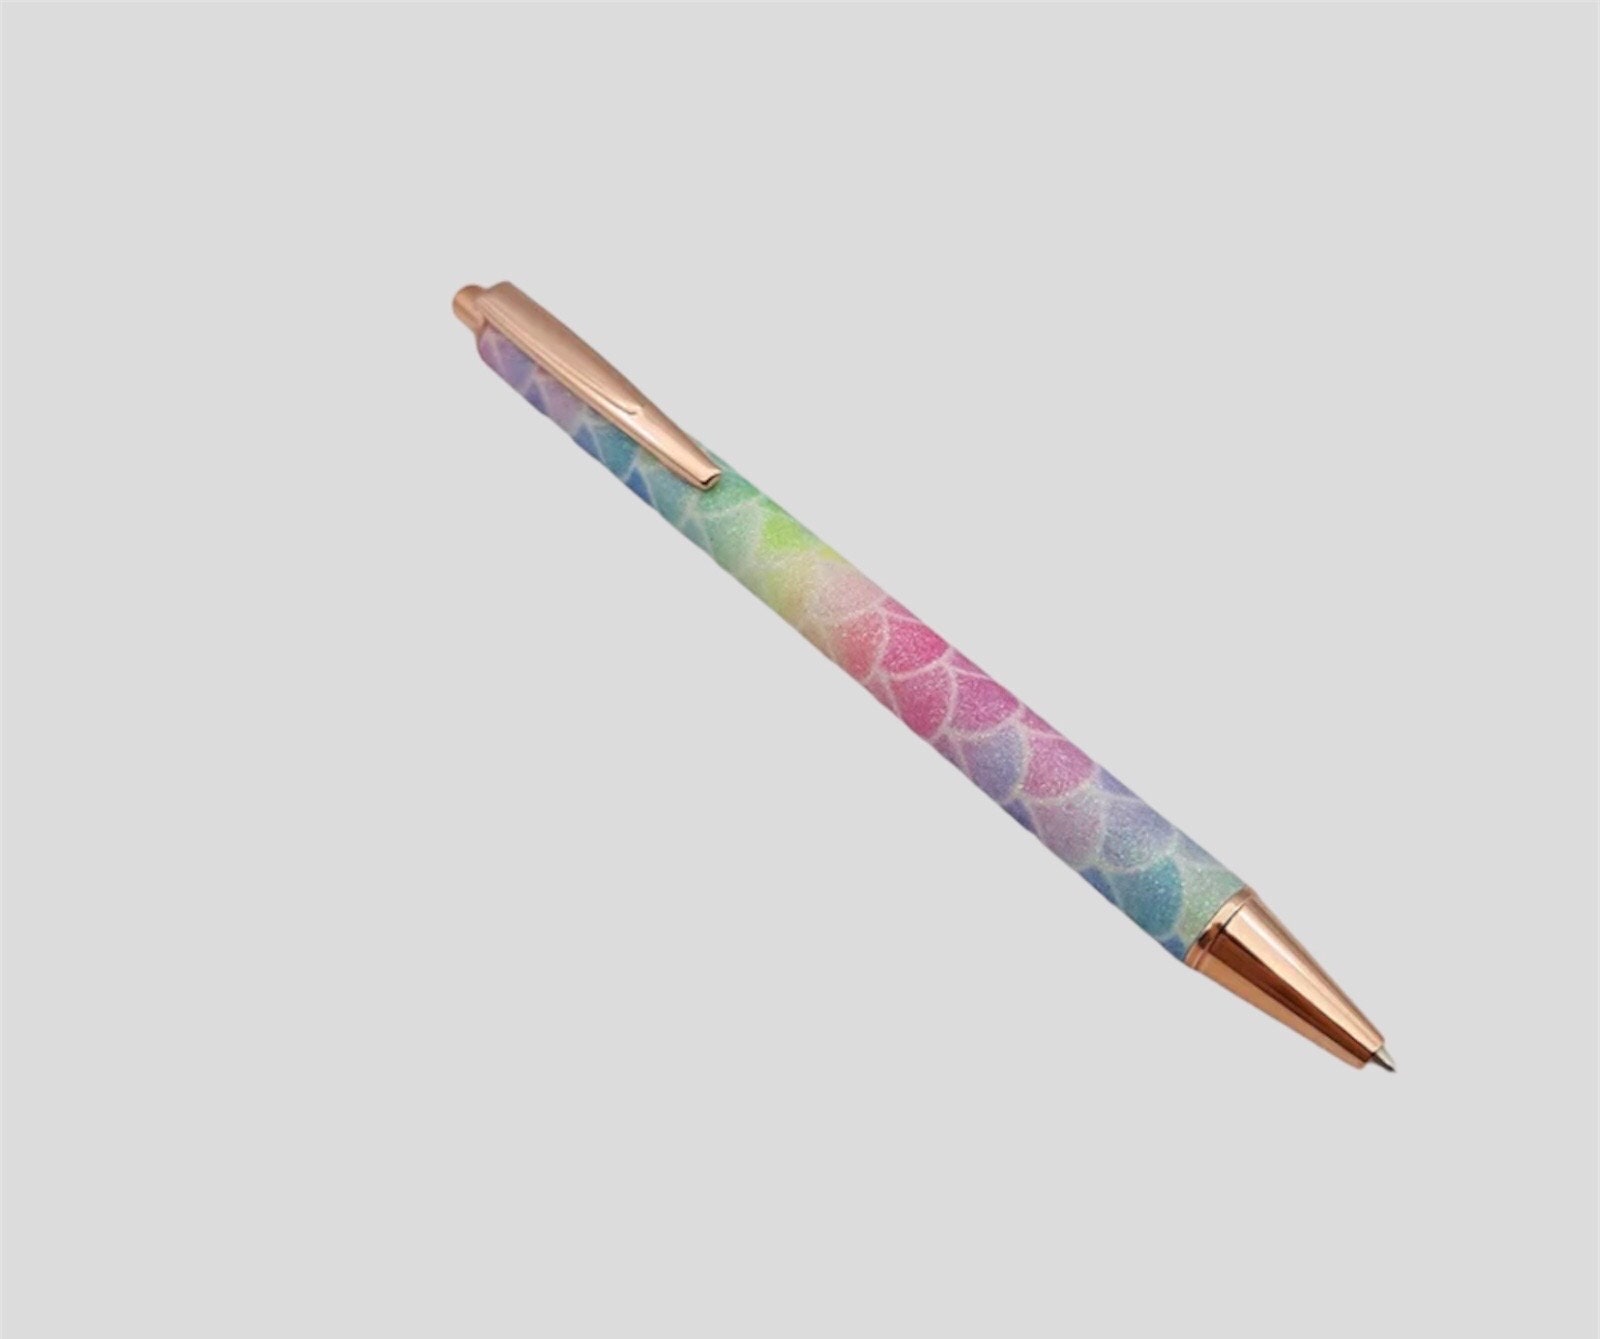 Rainbow stylus pen